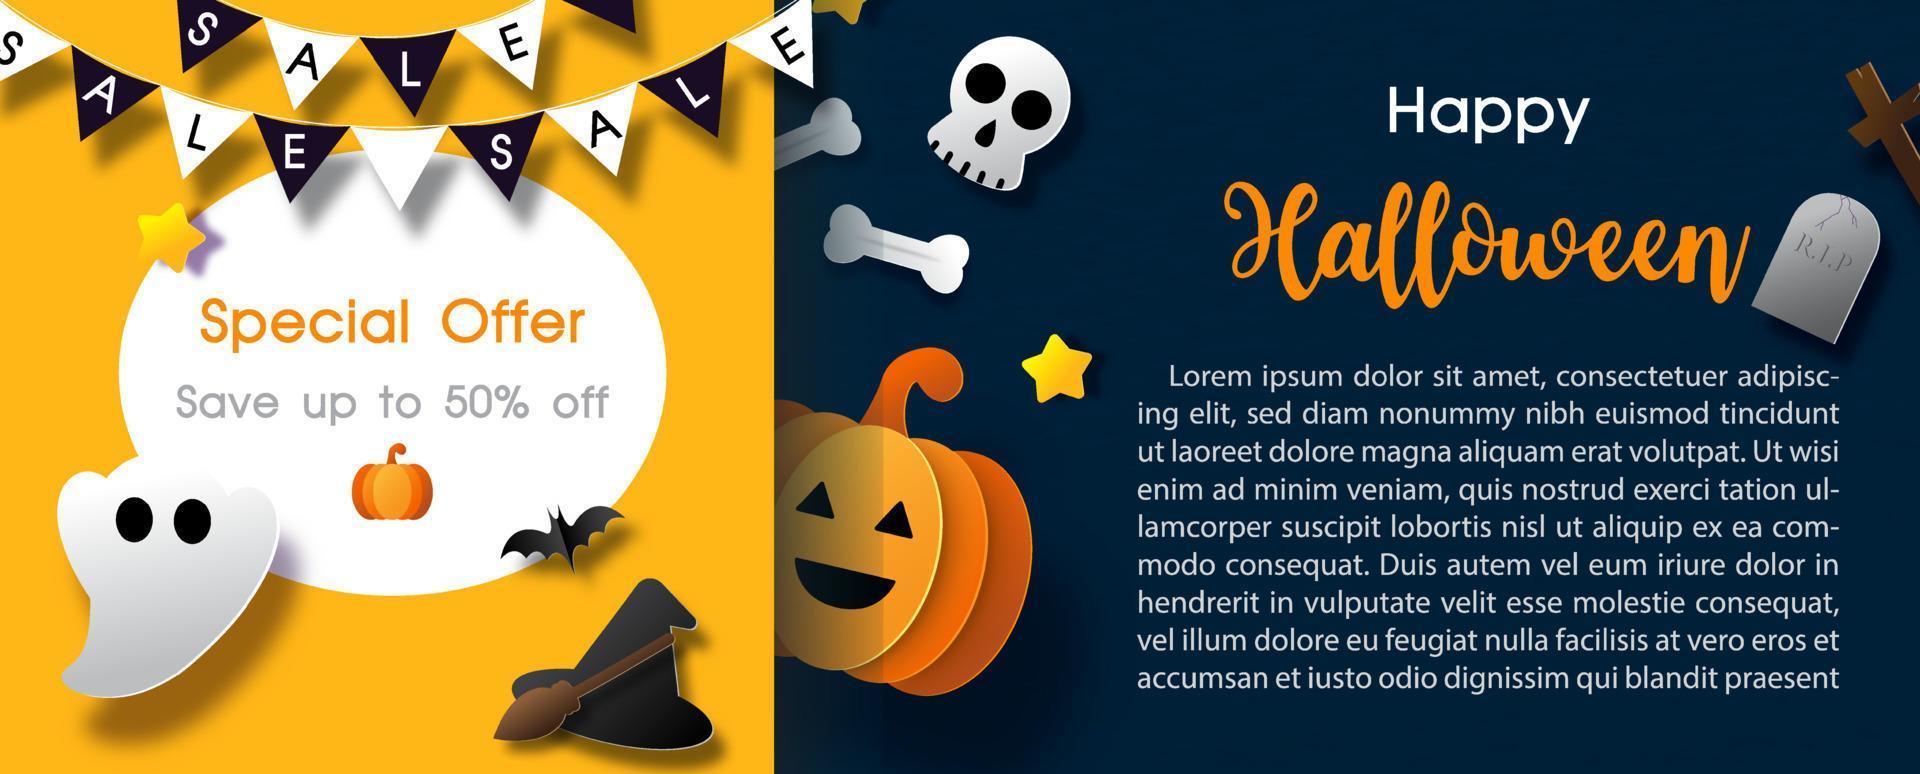 Shop-Banner und Werbung für den Halloween-Tag im Papierschnitt-Stil und Banner-Vektordesign. vektor